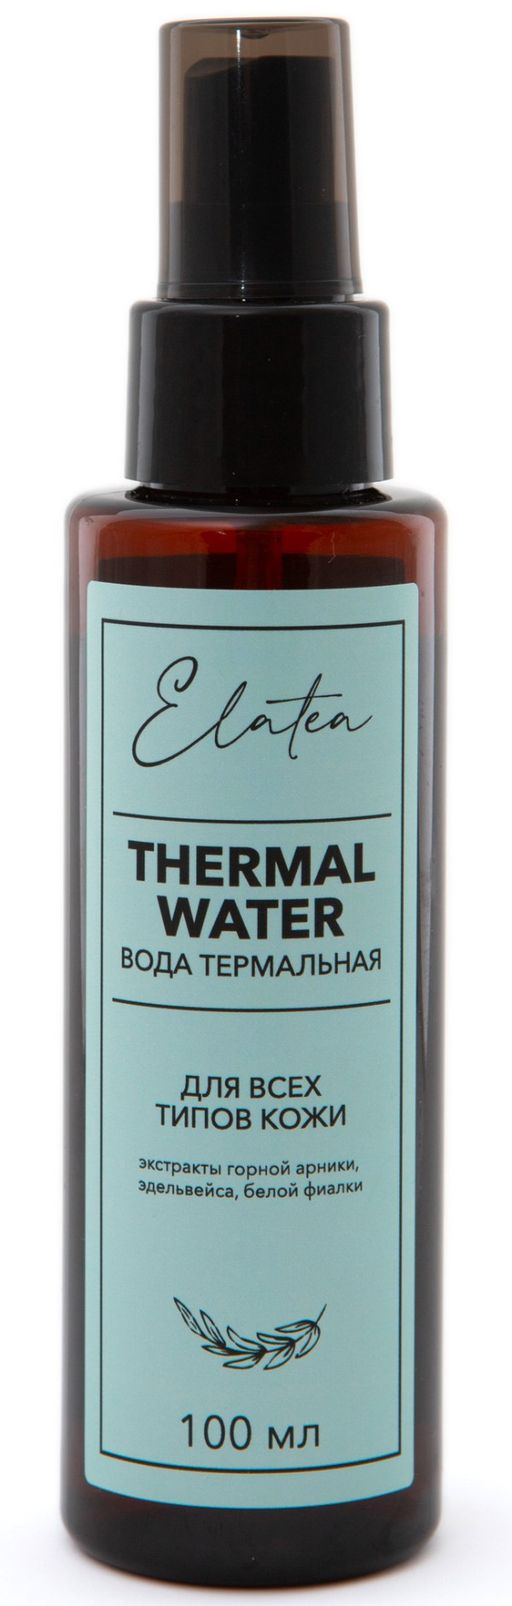 Elatea Вода термальная для всех типов кожи, 100 мл, 1 шт.